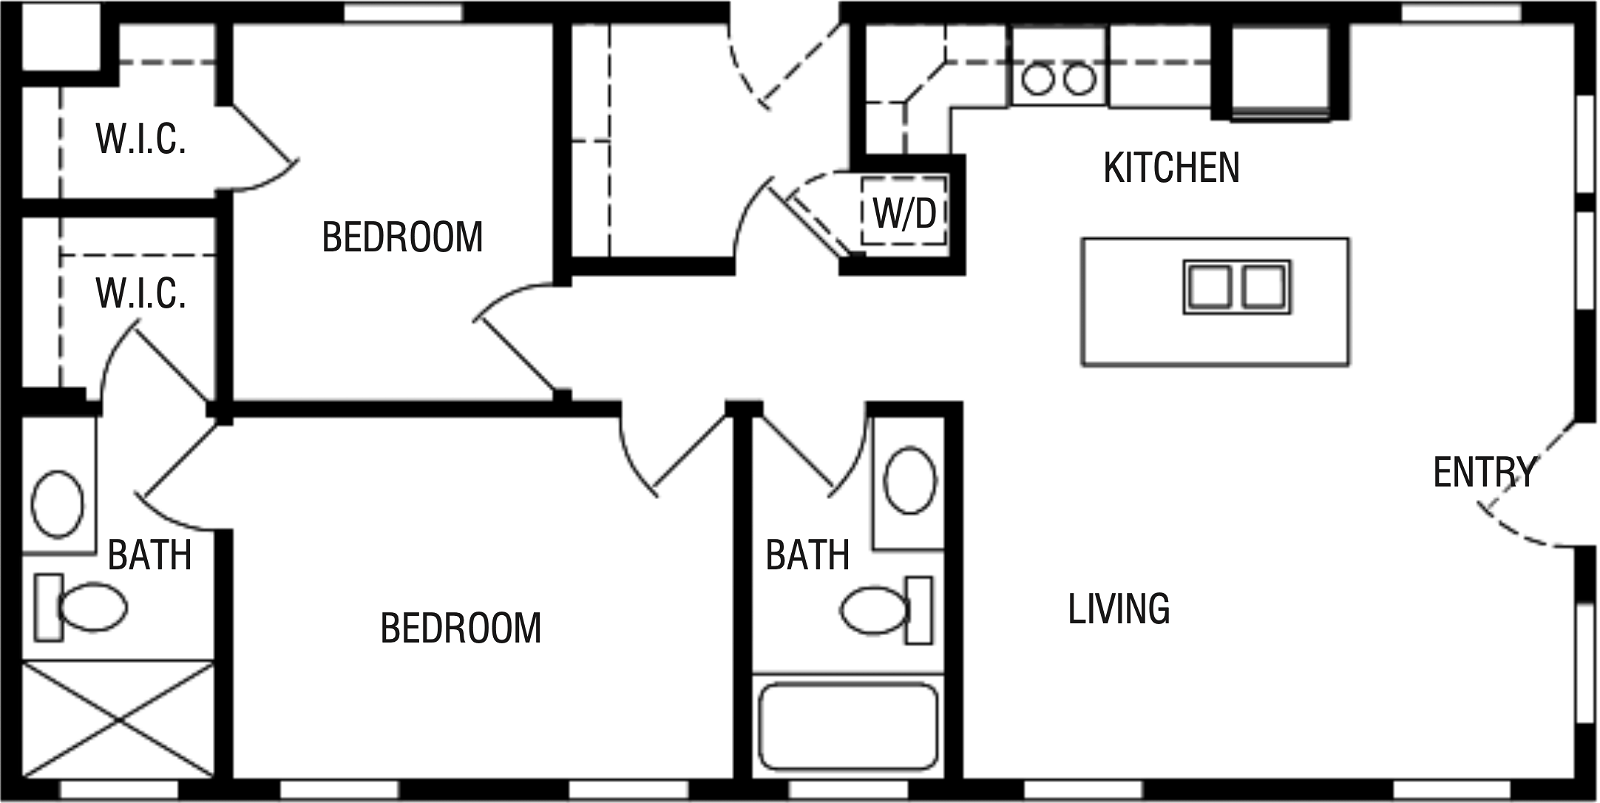 The danville floor plan home features